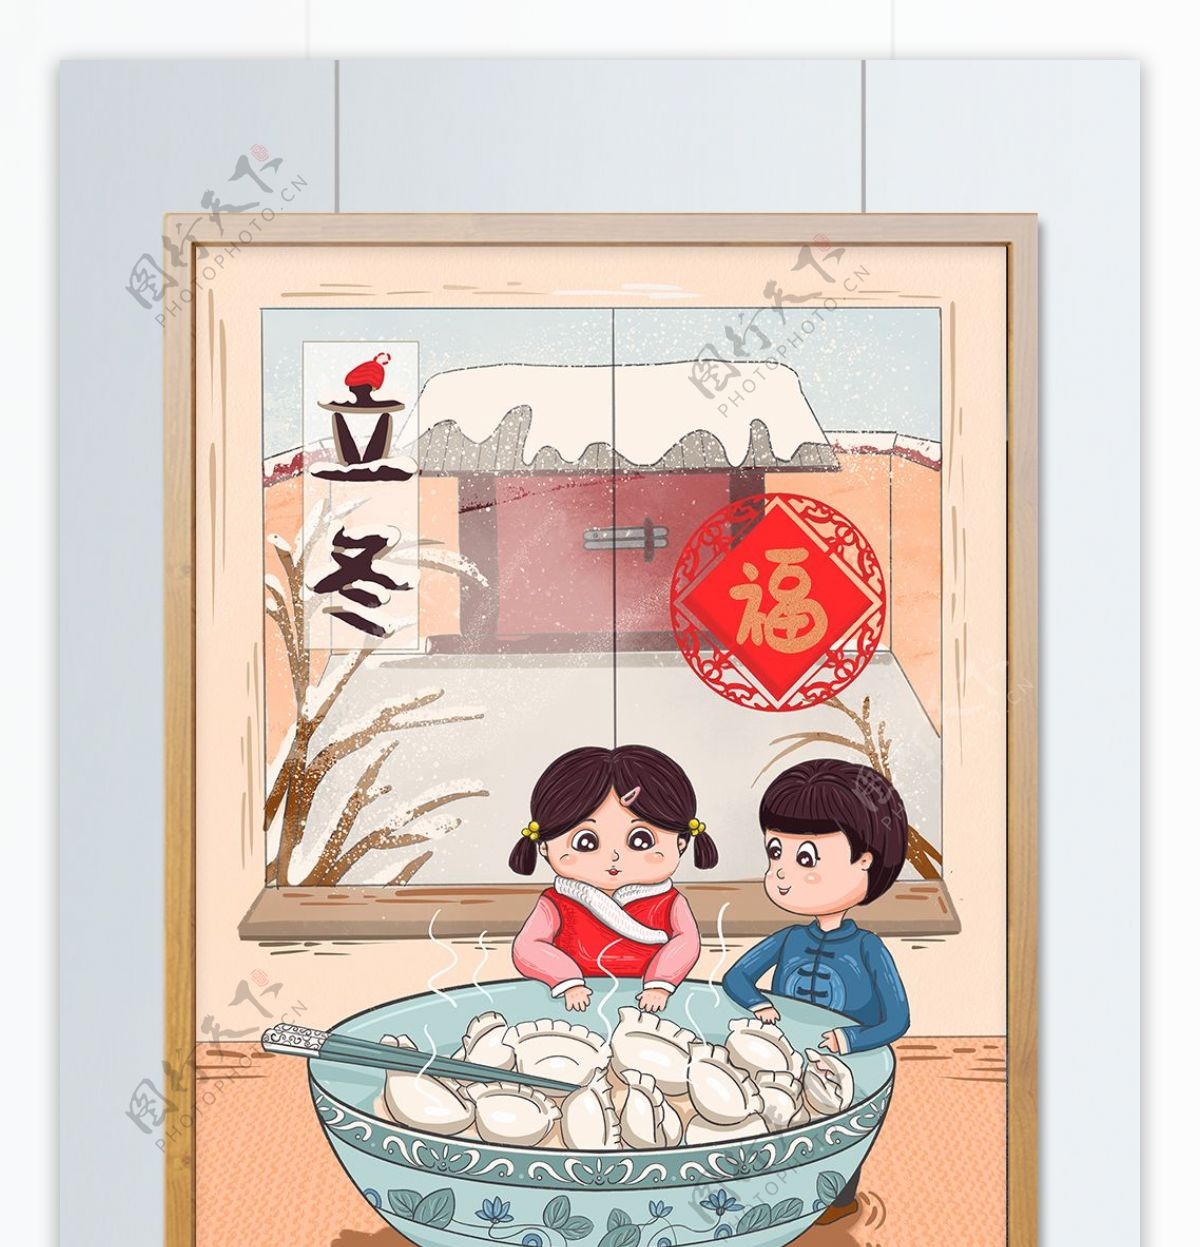 立冬吃水饺的卡通可爱中国风小孩手绘风插画